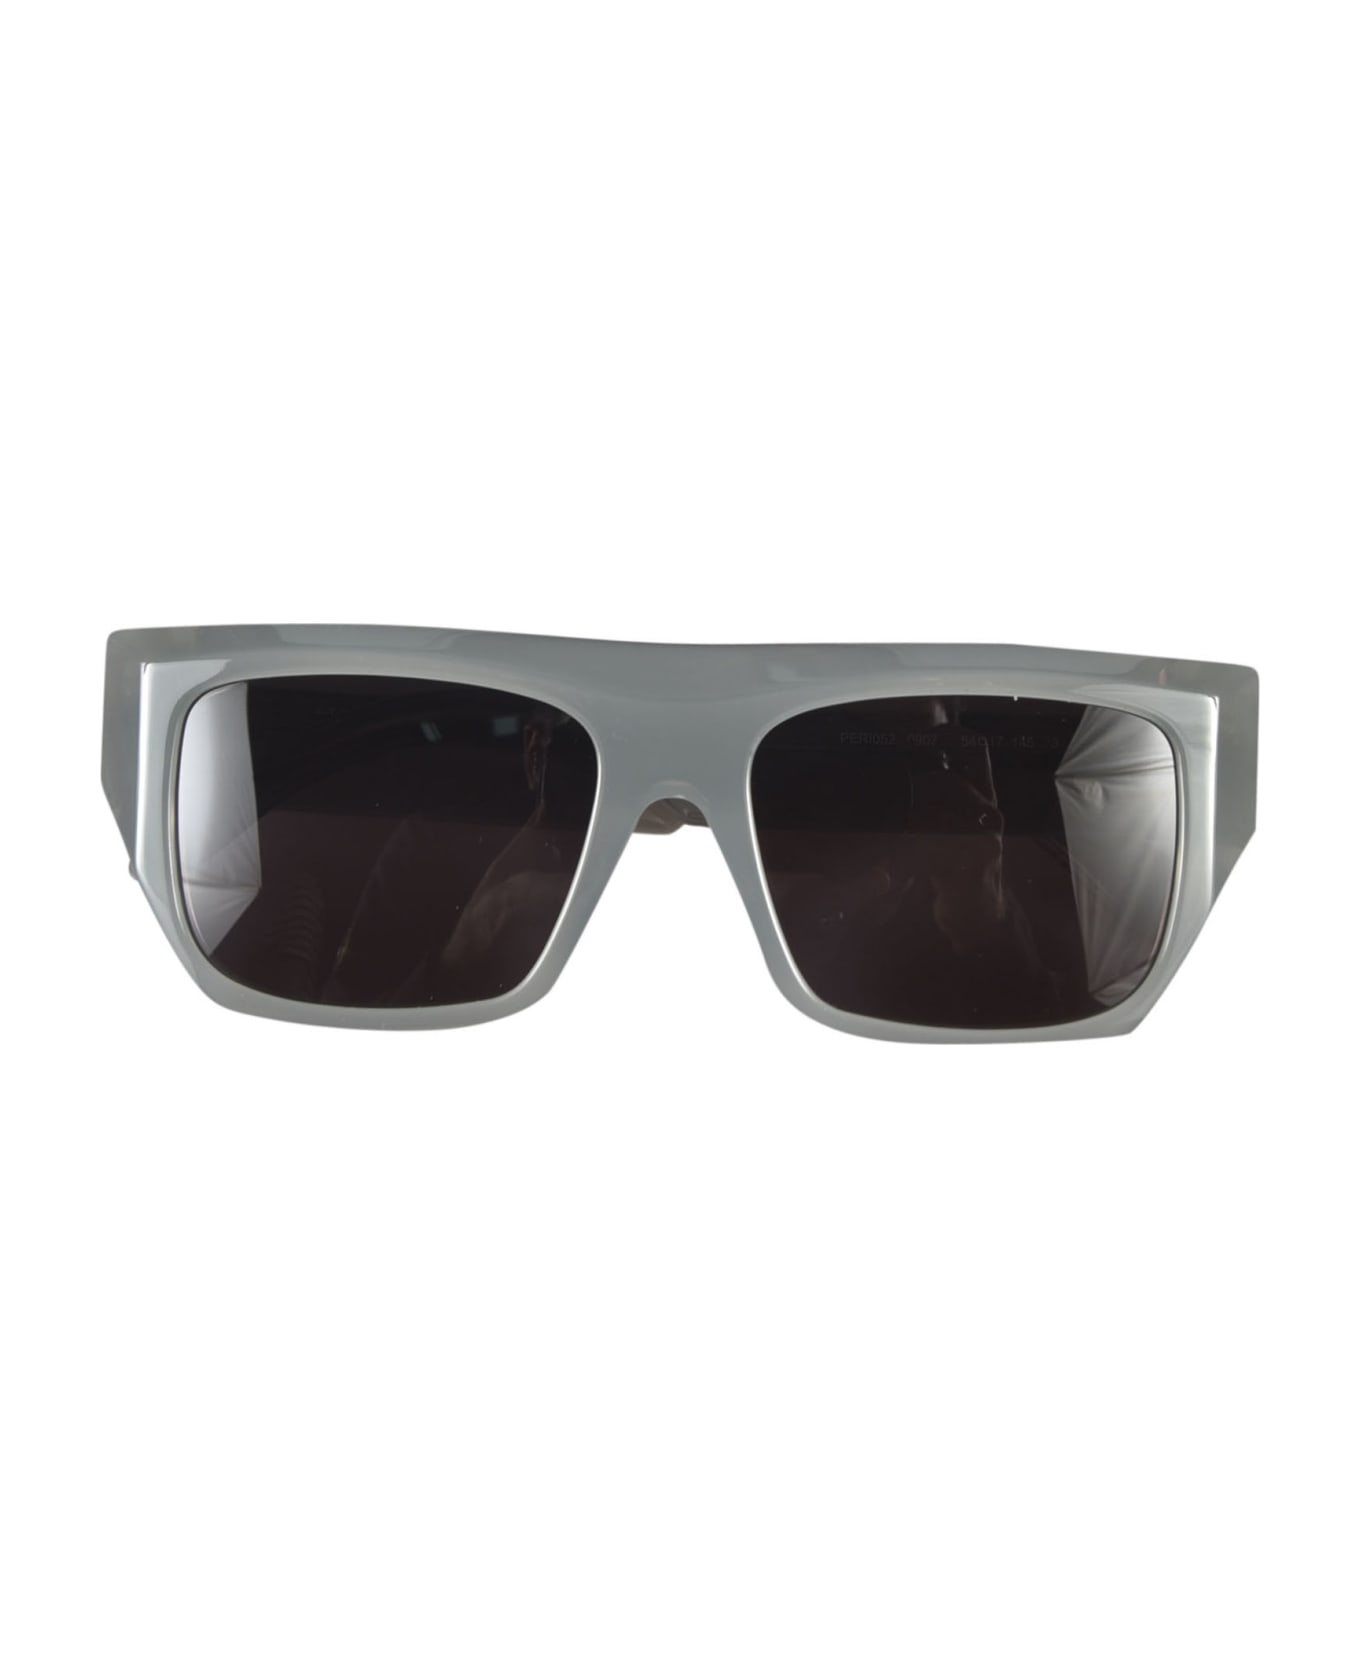 Palm Angels Niland Sunglasses - Grey/Dark Grey